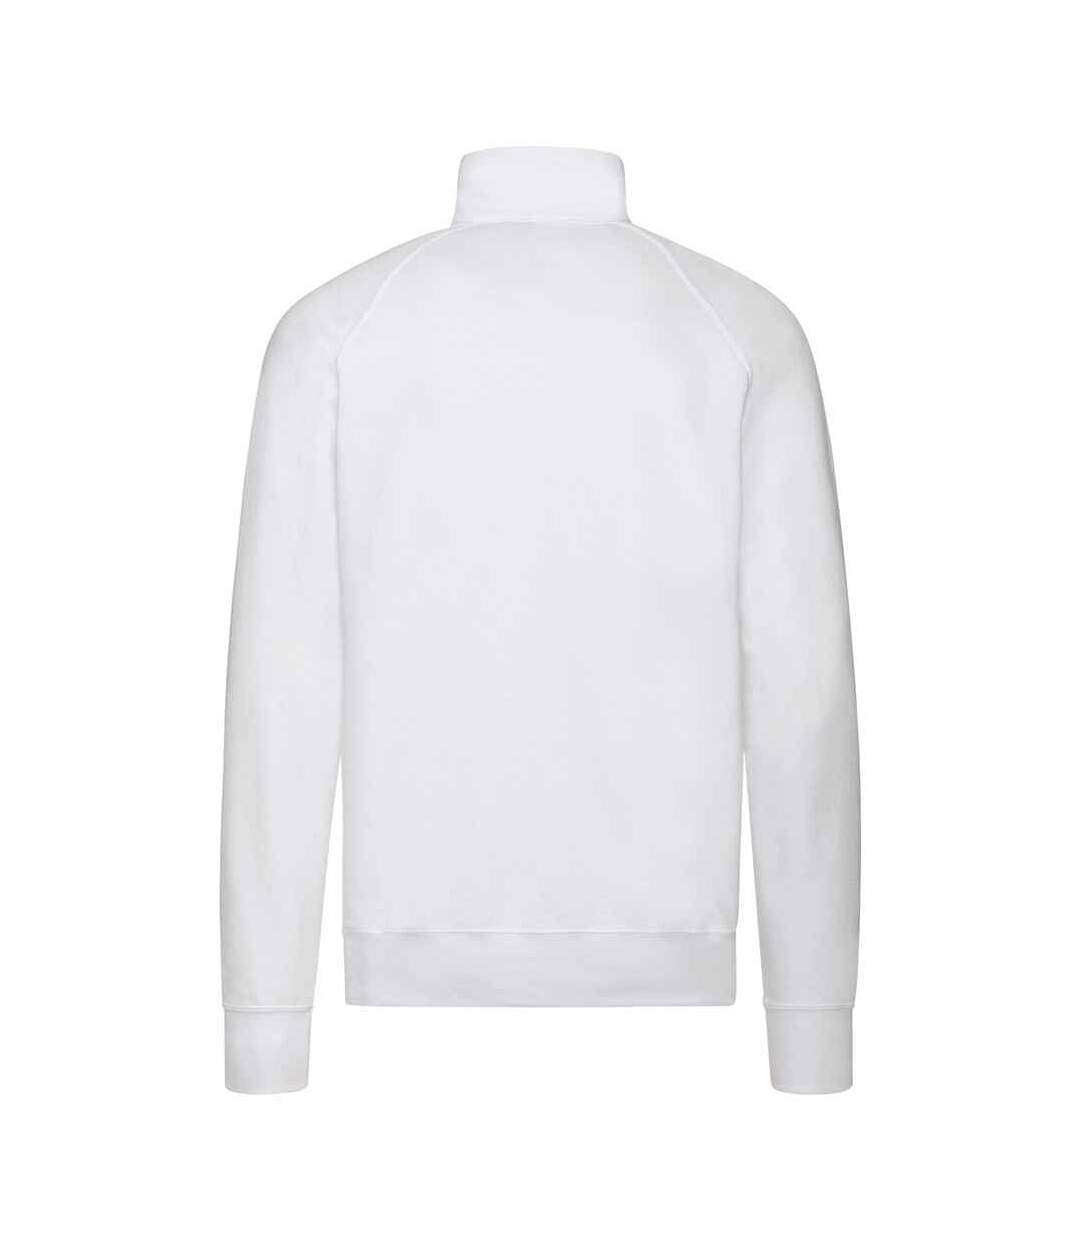 Fruit Of The Loom Mens Lightweight Zip Neck Sweatshirt (White)